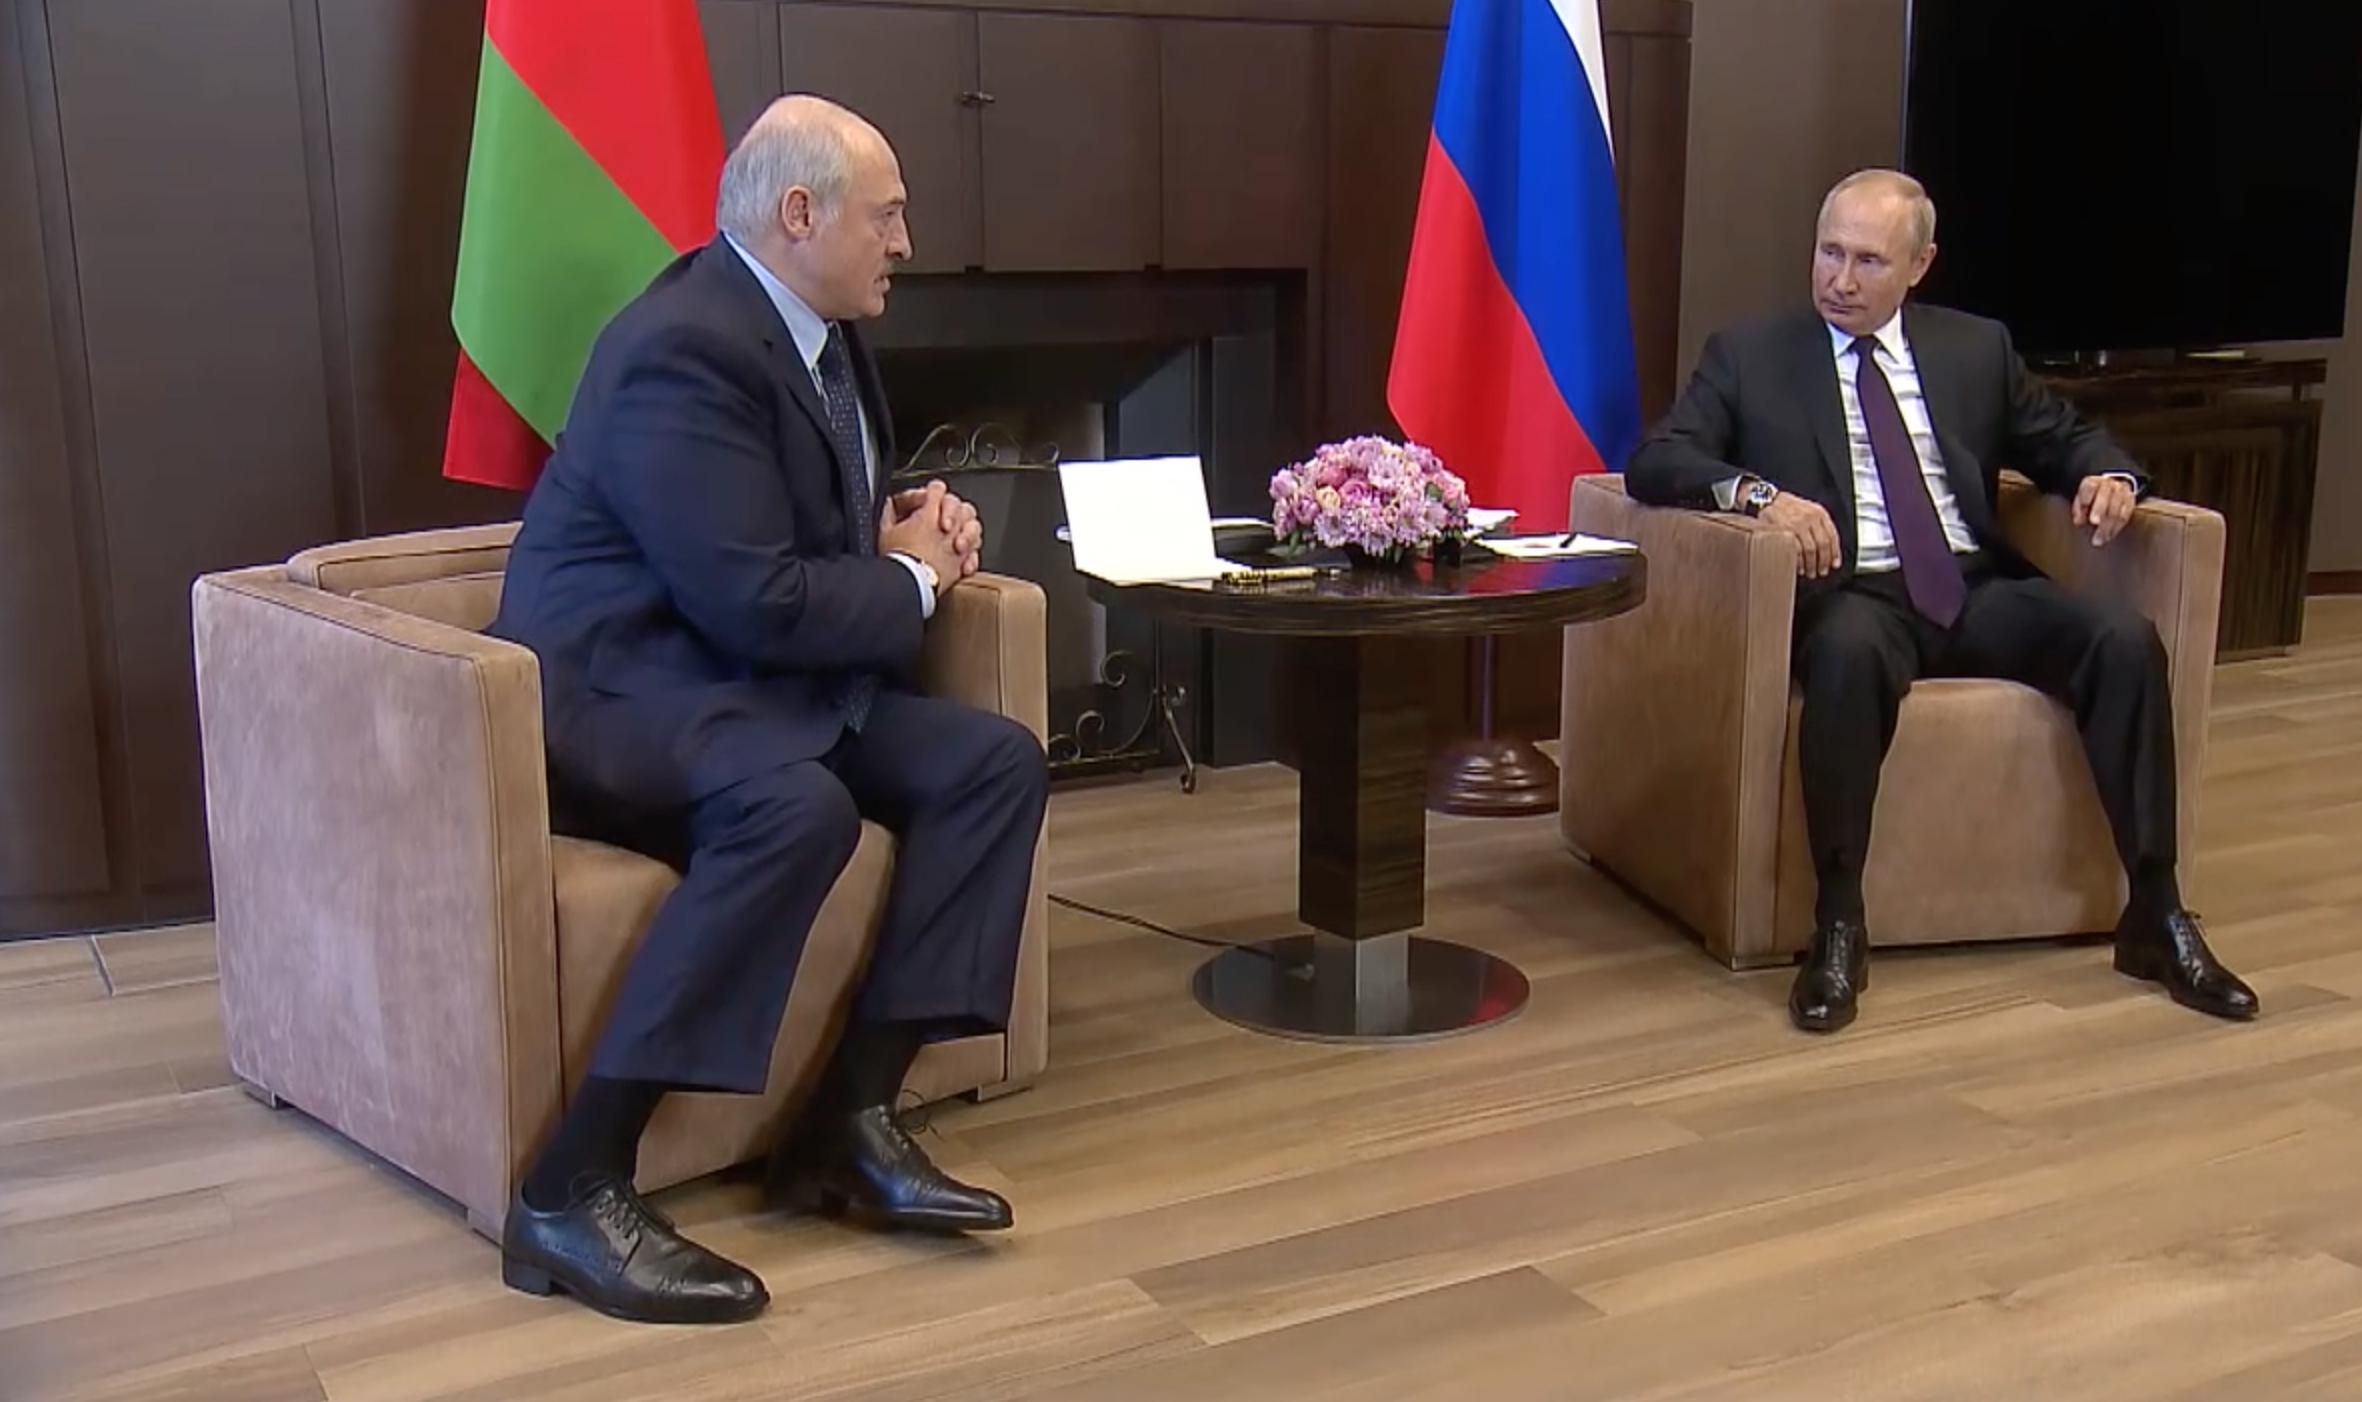 Лукашенко поскаржився Путіну на "жорстокі дії Польщі" біля кордону - новини Білорусь - 24 Канал